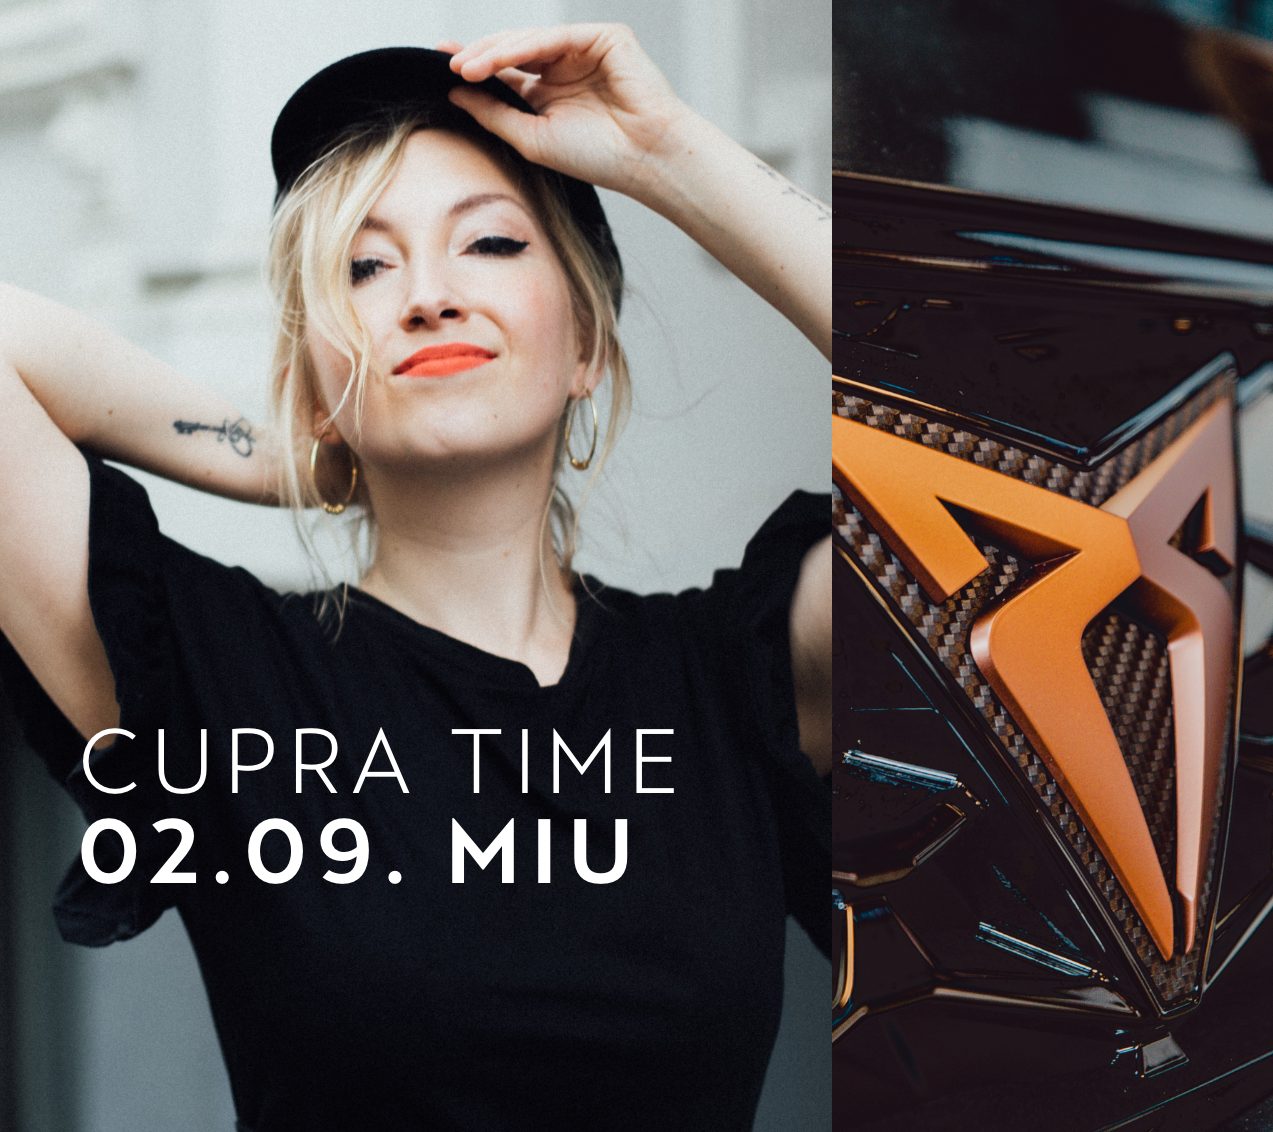 🎉 Wir Verlosen 2 X 2 Tickets Für Das Konzert Mit Miu In Der Cupra Garage Aino Hamburg